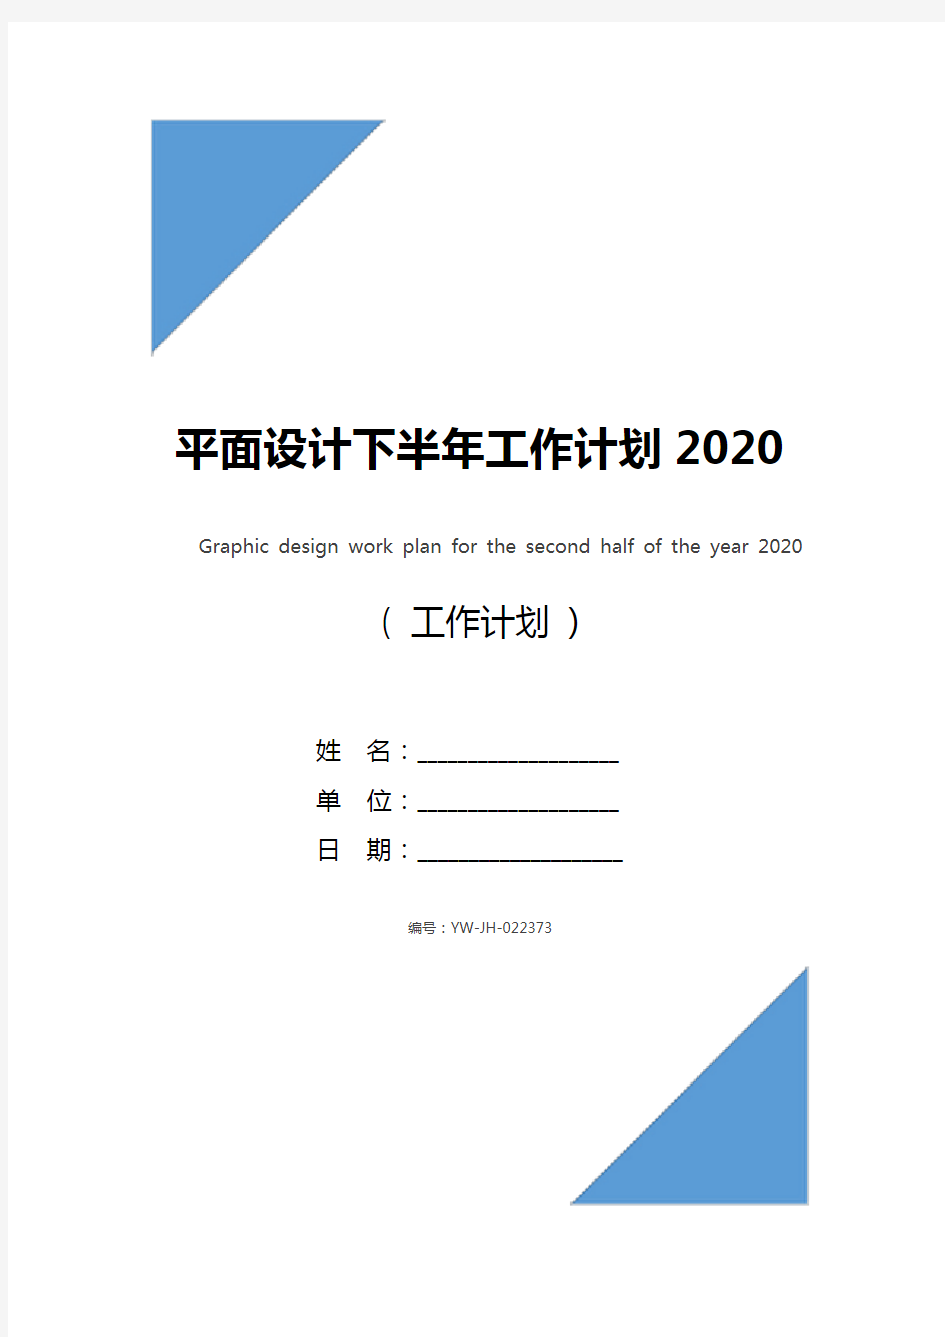 平面设计下半年工作计划2020